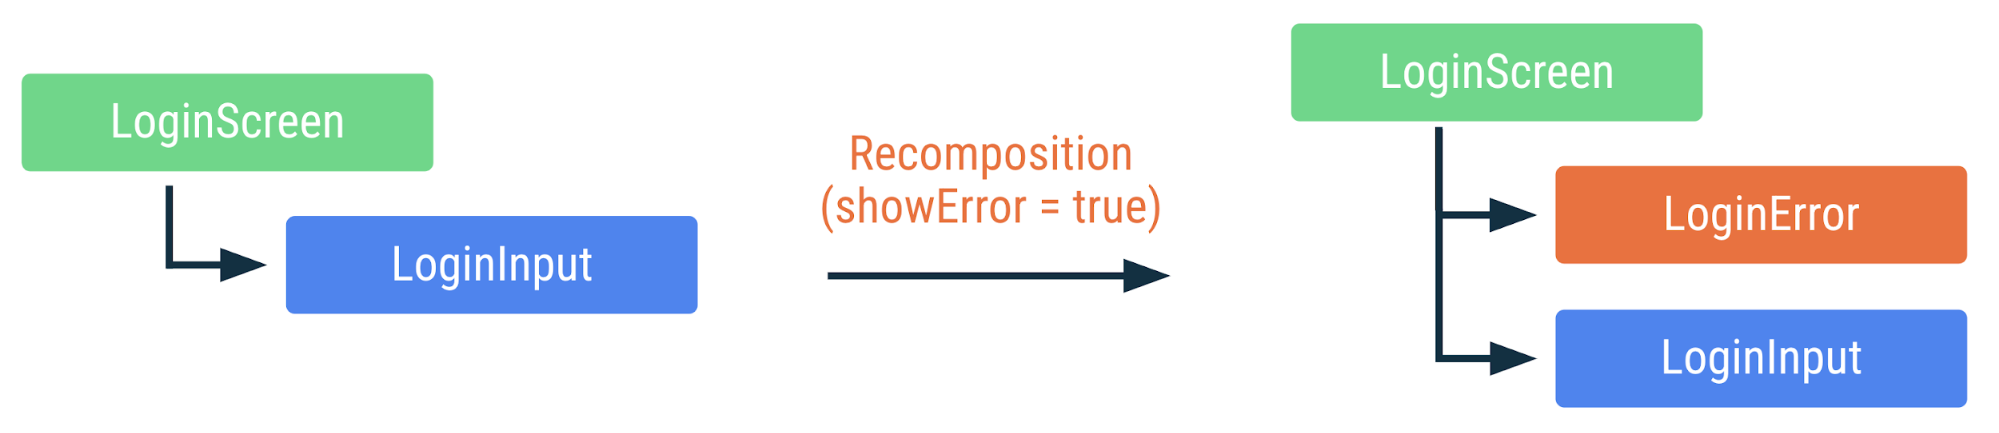 showError işaretinin true olarak değiştirilmesi durumunda önceki kodun nasıl yeniden oluşturulduğunu gösteren şema. LoginError composable eklenir ancak diğer composable&#39;lar yeniden derlenmez.